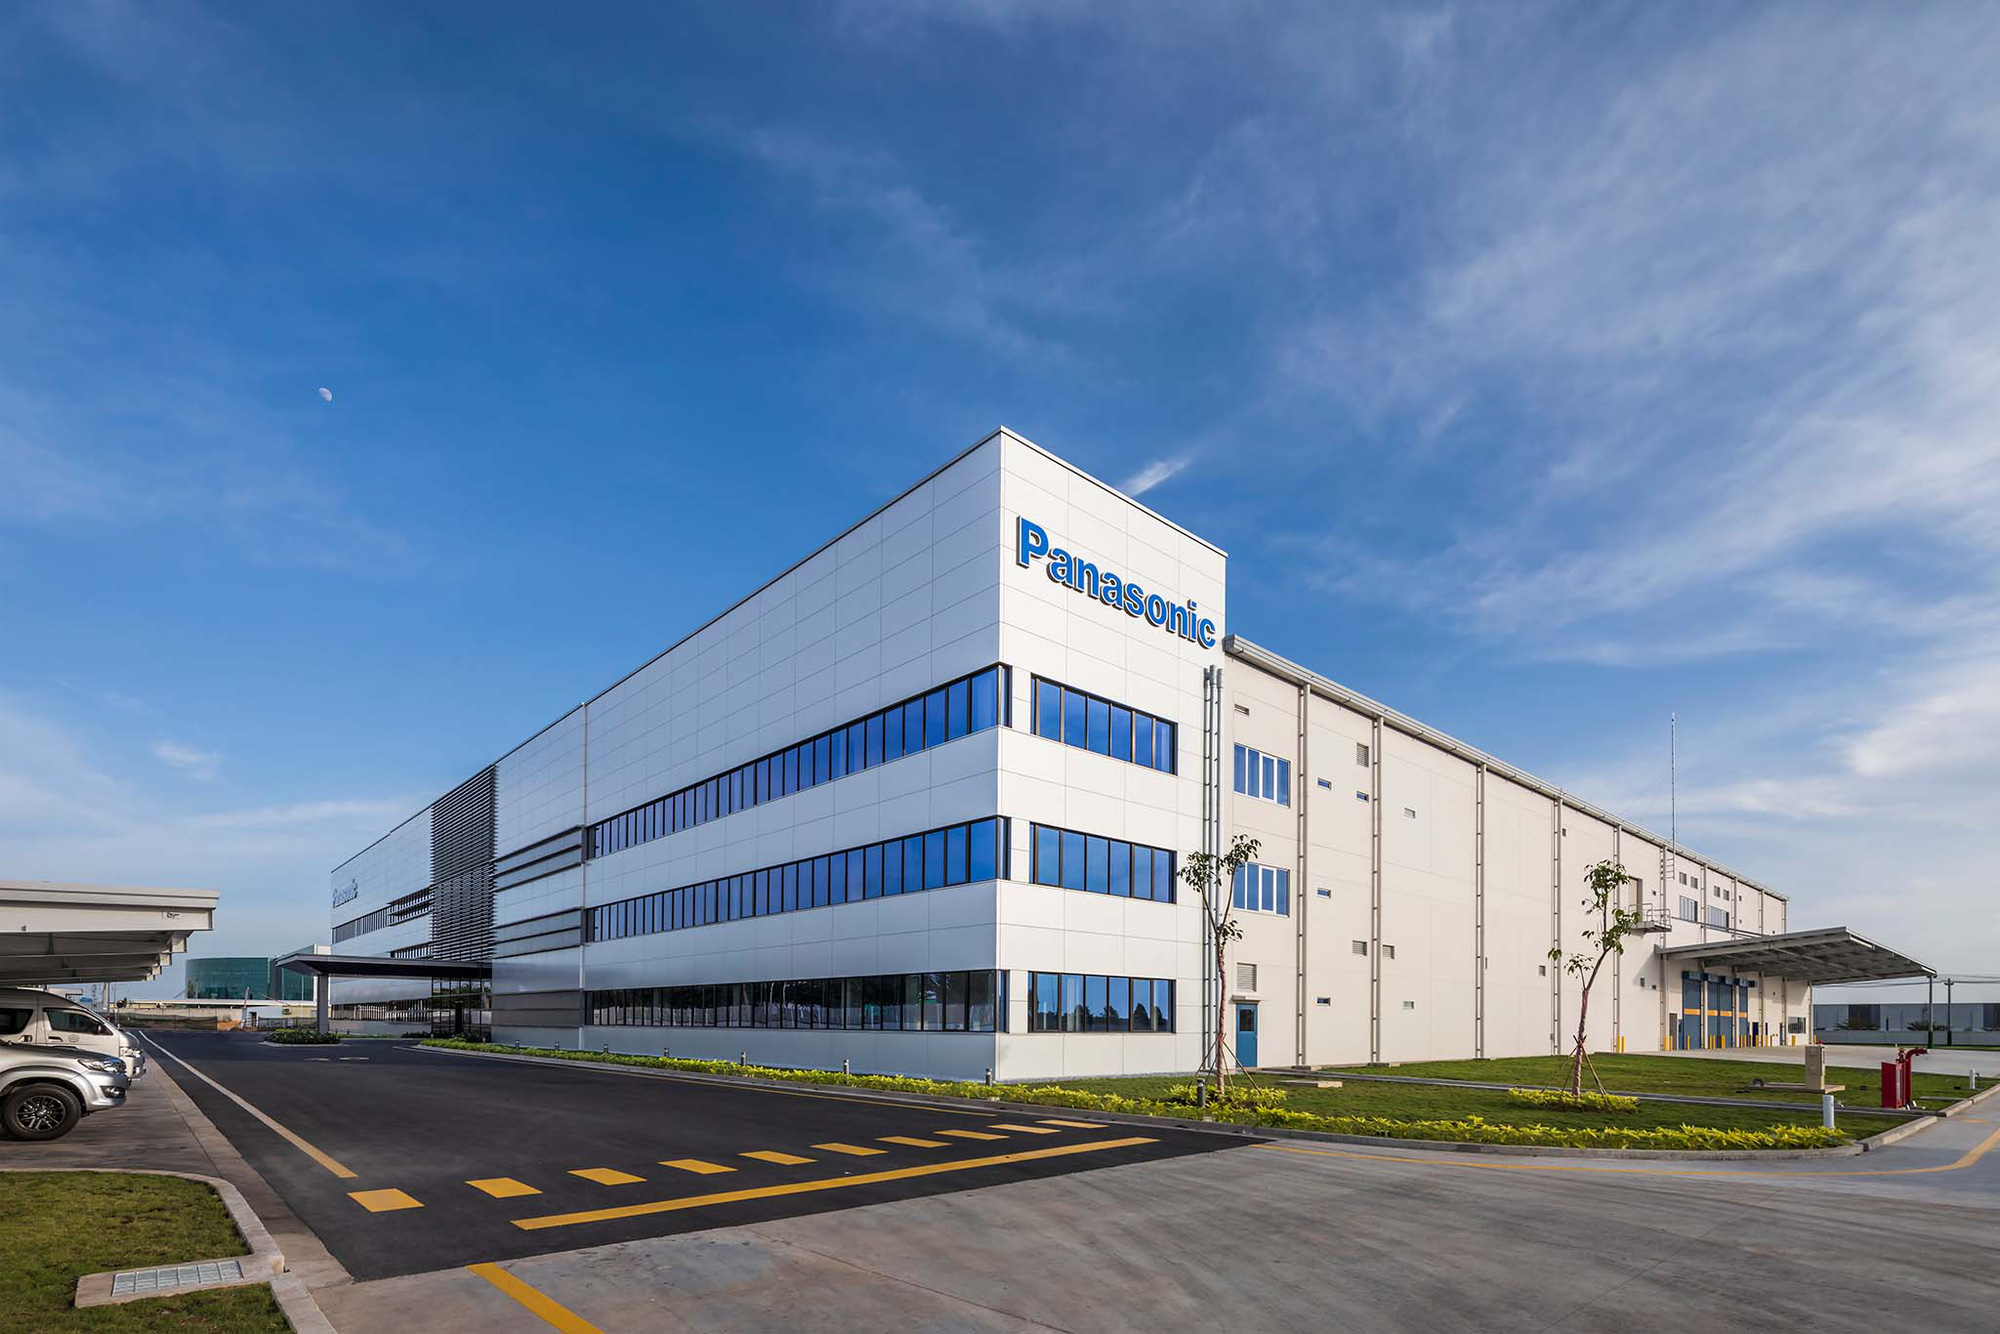 Panasonic khai trương nhà máy mới về thiết bị chất lượng không khí tại Việt Nam